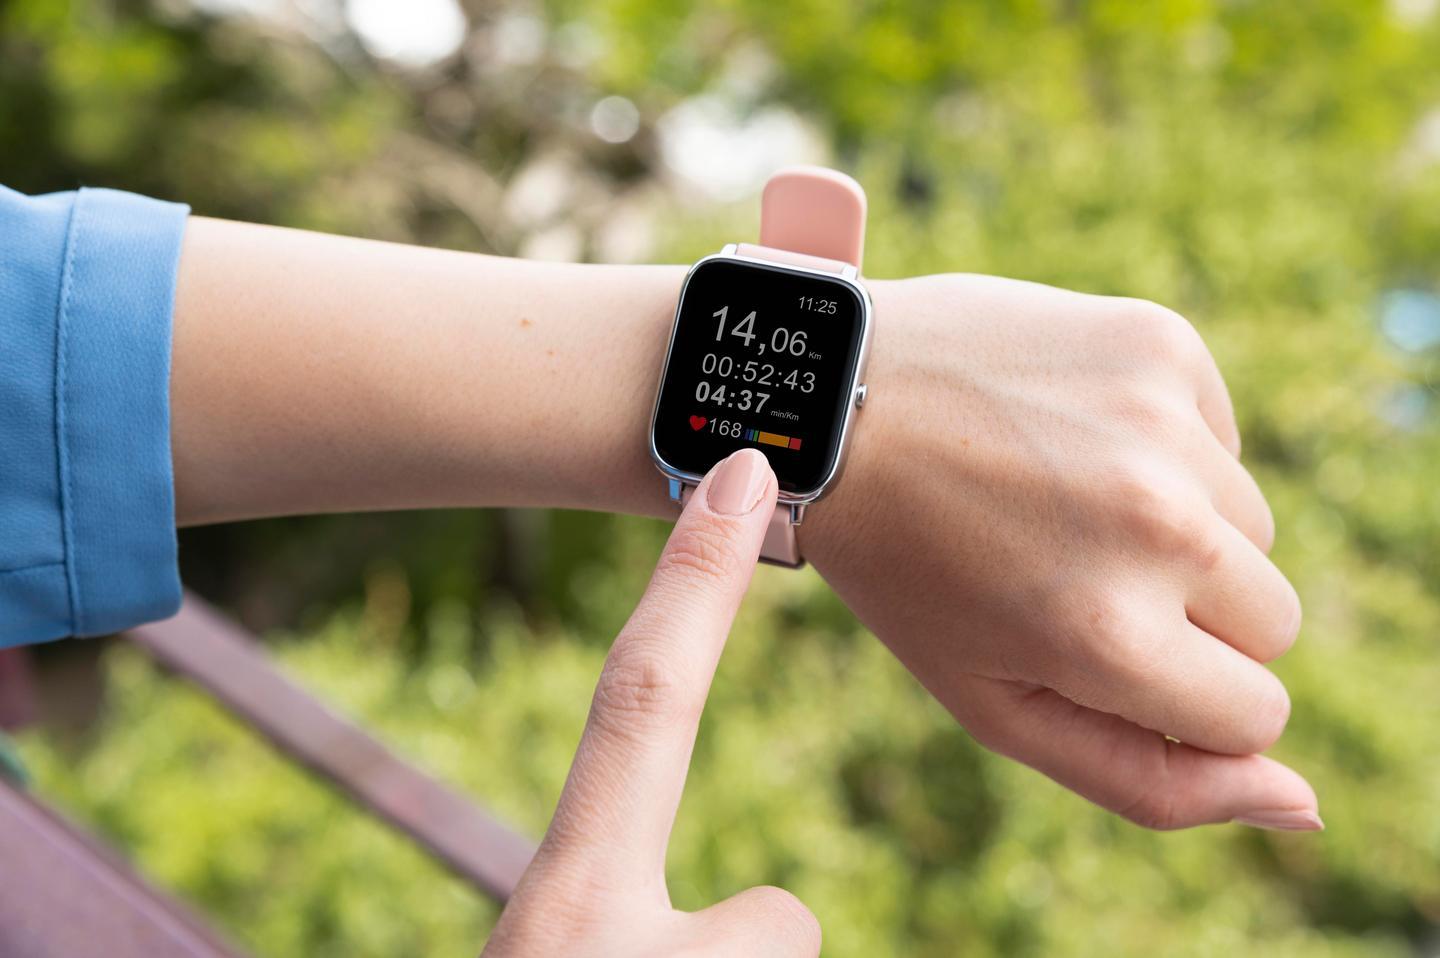 Jaki model zegarka Apple dla kobiet wybrać?